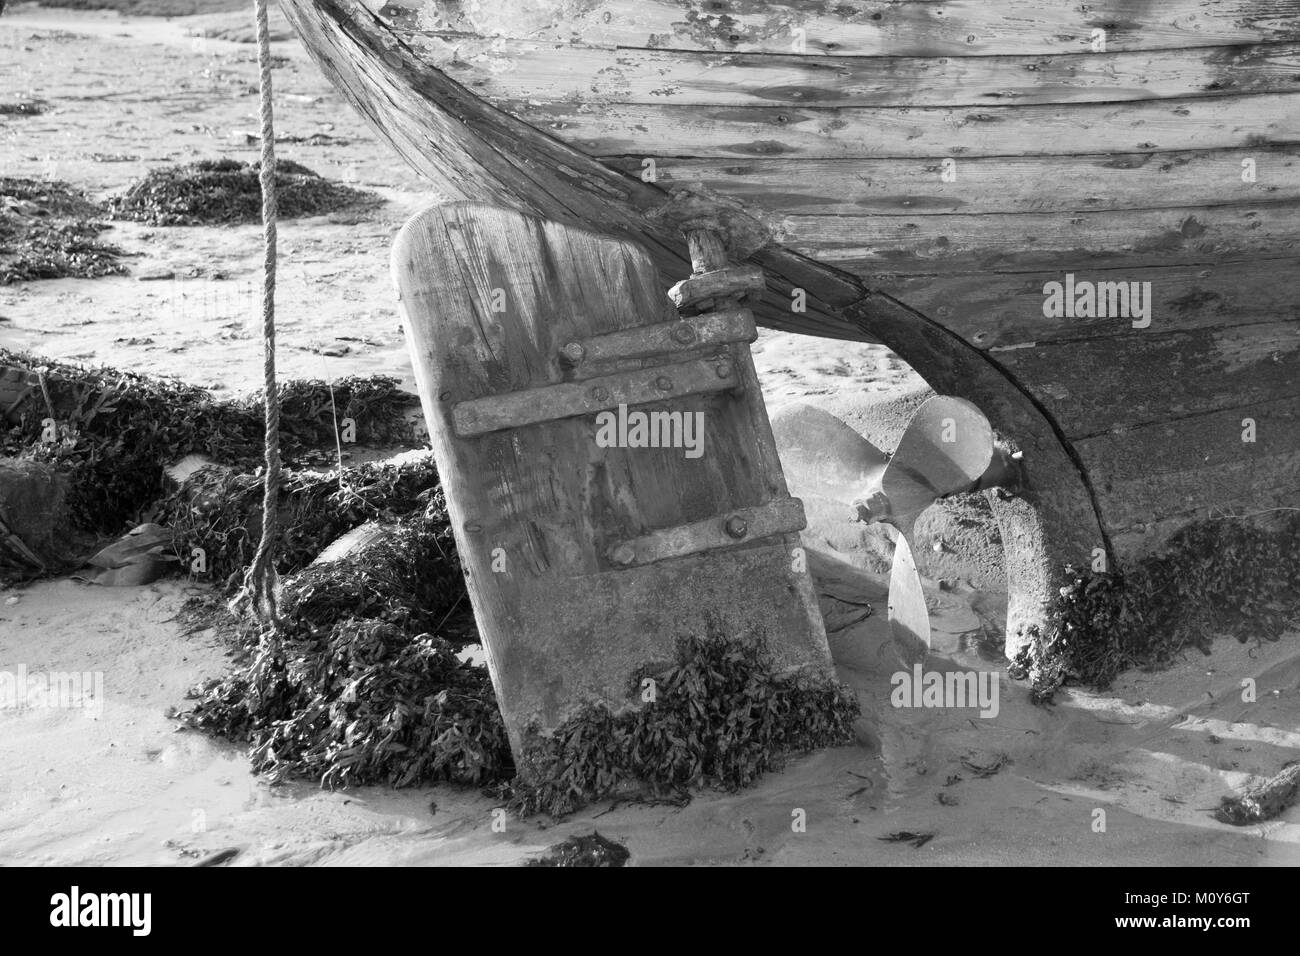 Das hintere Ende eines alten Boot aufgeben. Das Bild zeigt die Holz- Ruder und Propeller. Stockfoto